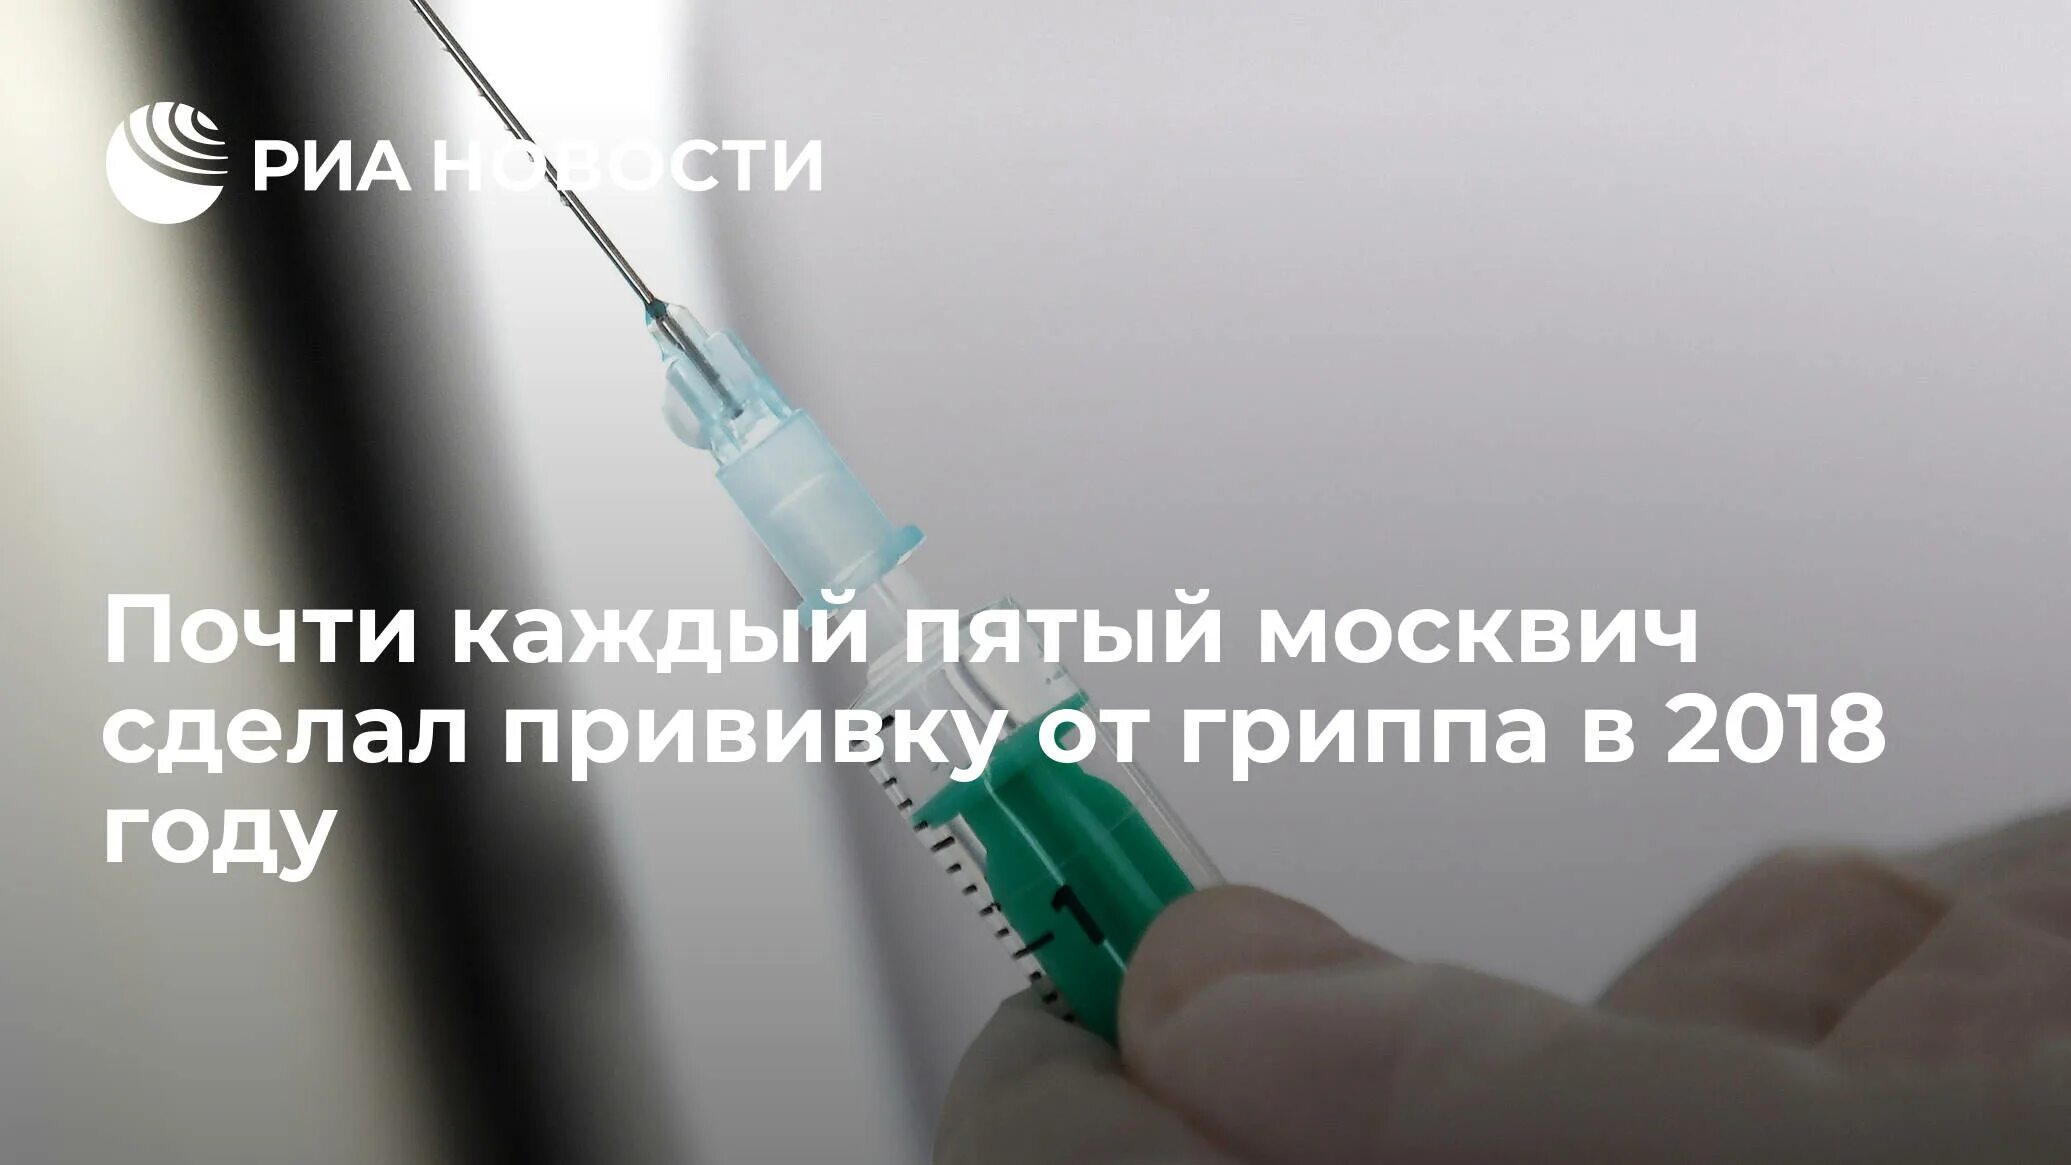 Оренбург где можно сделать прививку. Минздрав предупреждает прививки. Презентация по иммунологии на тему вакцинация против Эболы.